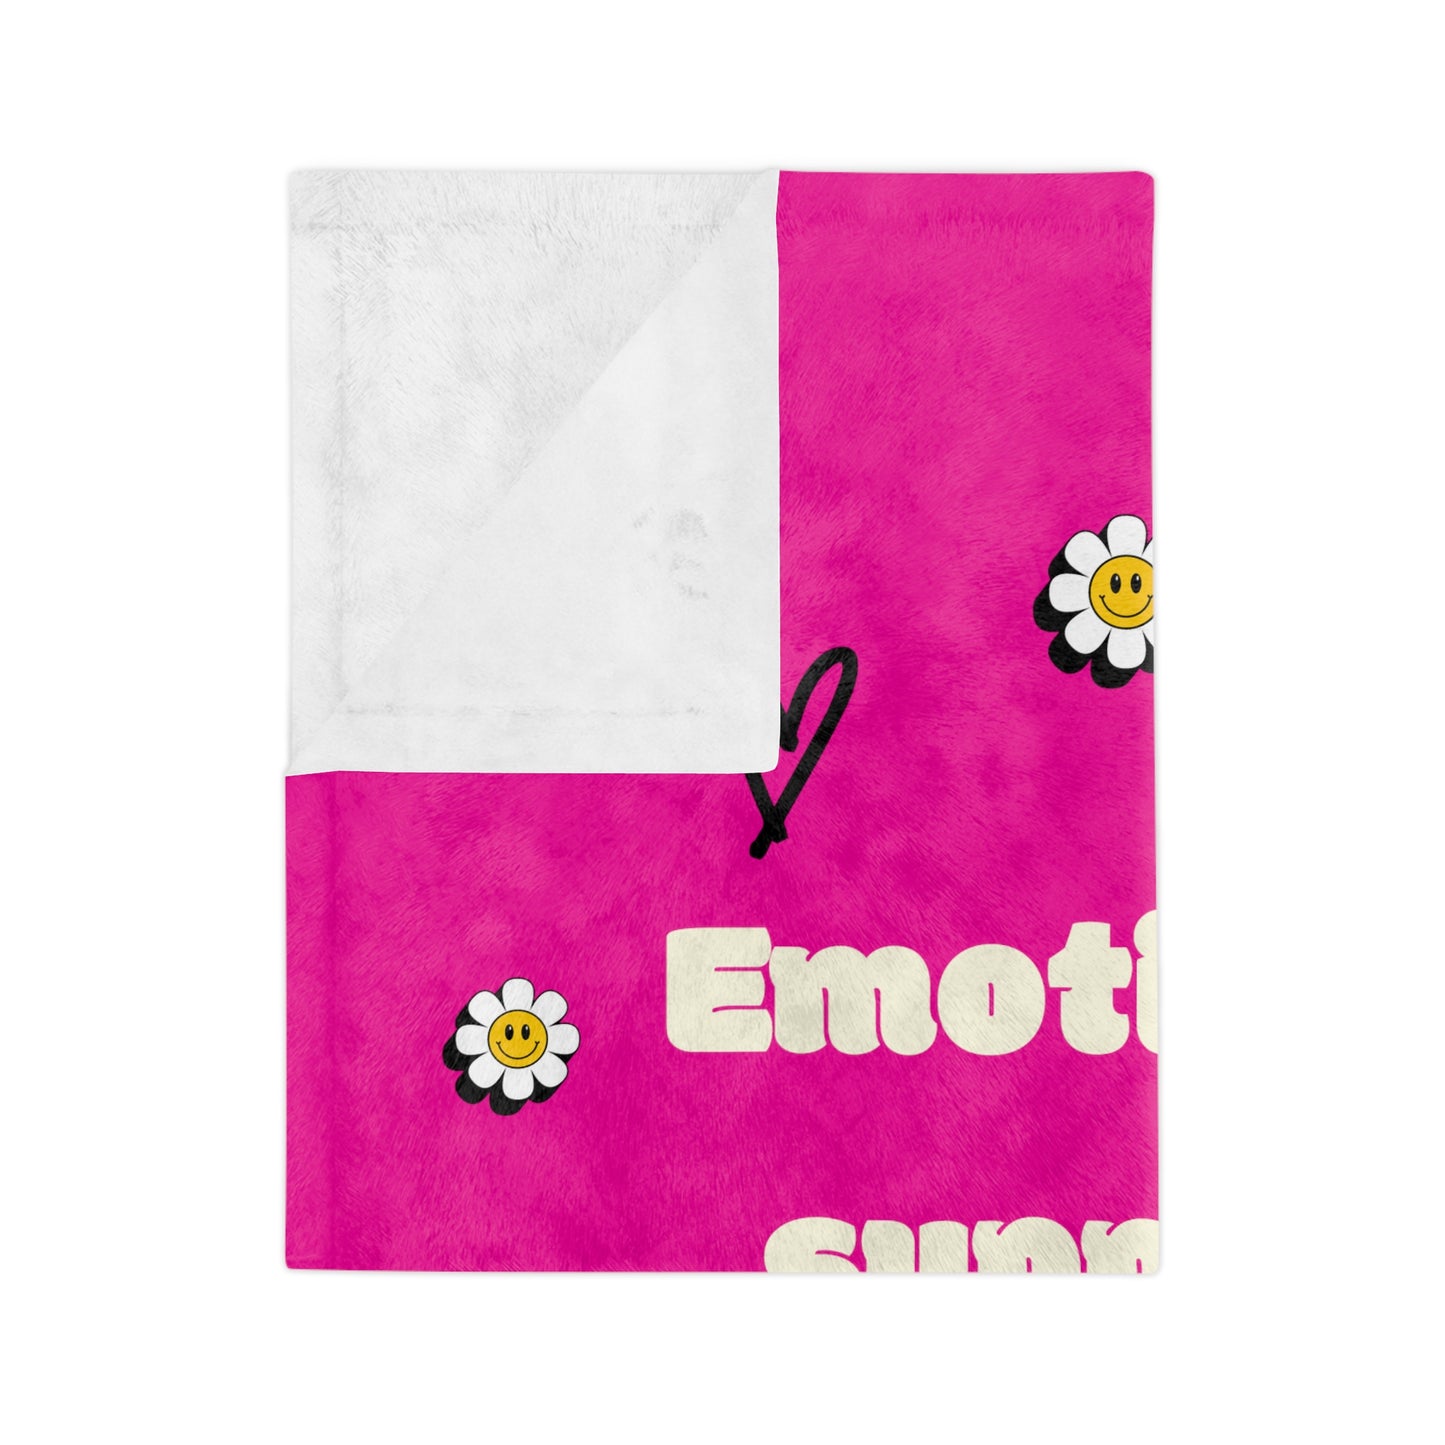 Emotional support Velveteen Minky Blanket Premium Quality